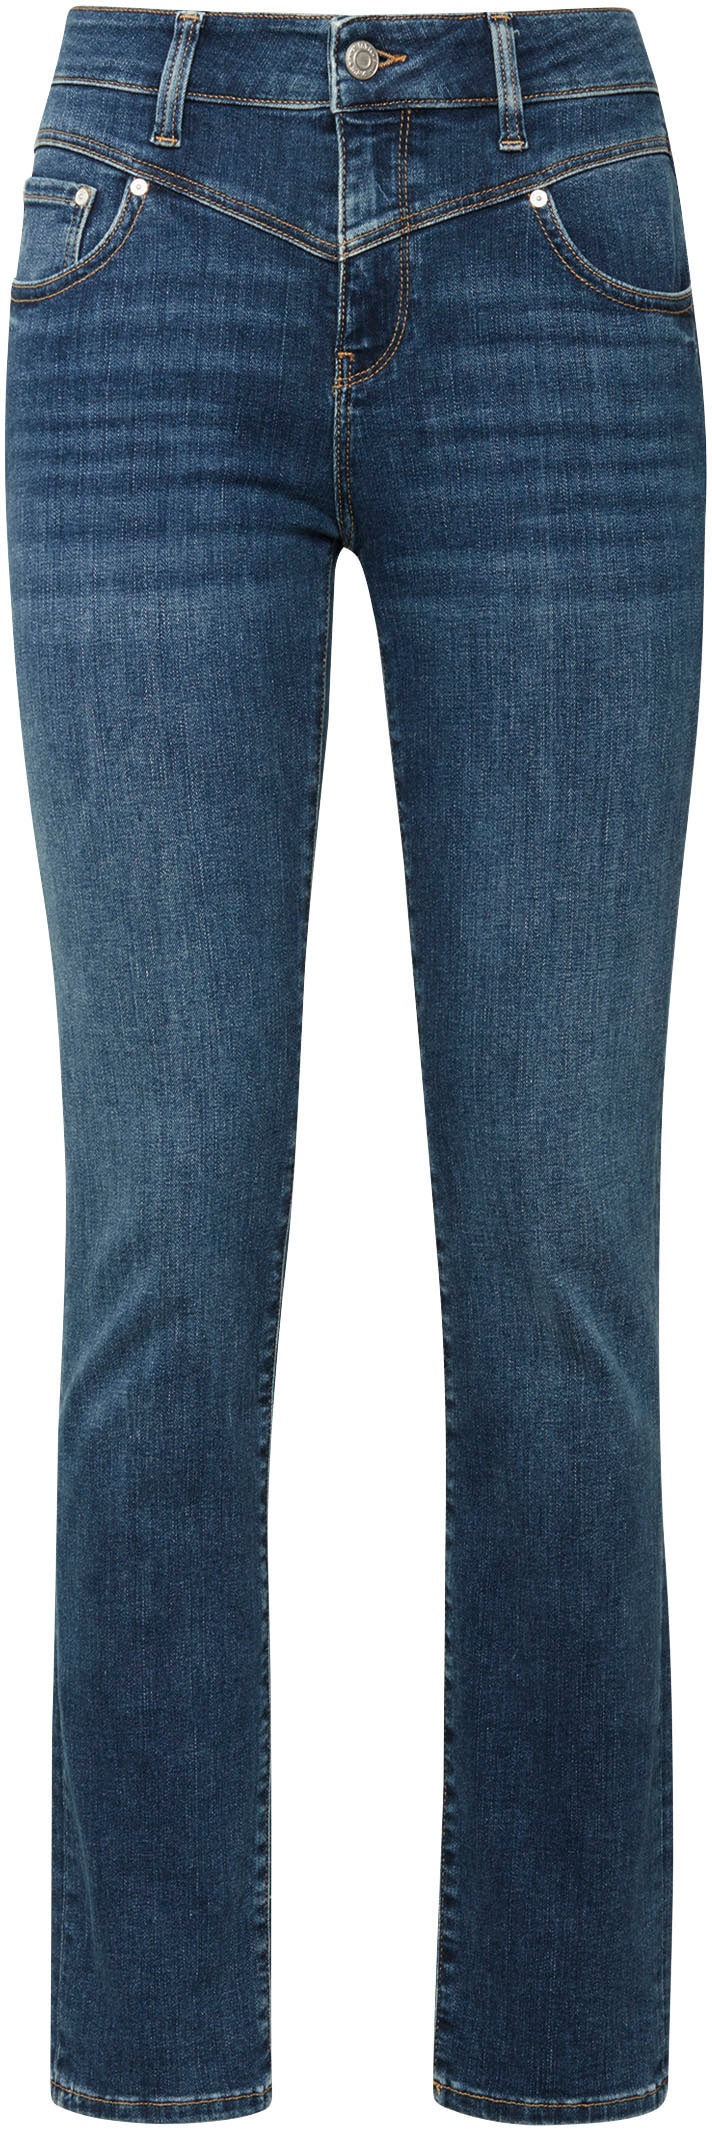 Mavi Slim-fit-Jeans, trageangenehmer Stretchdenim dank hochwertiger Verarbeitung